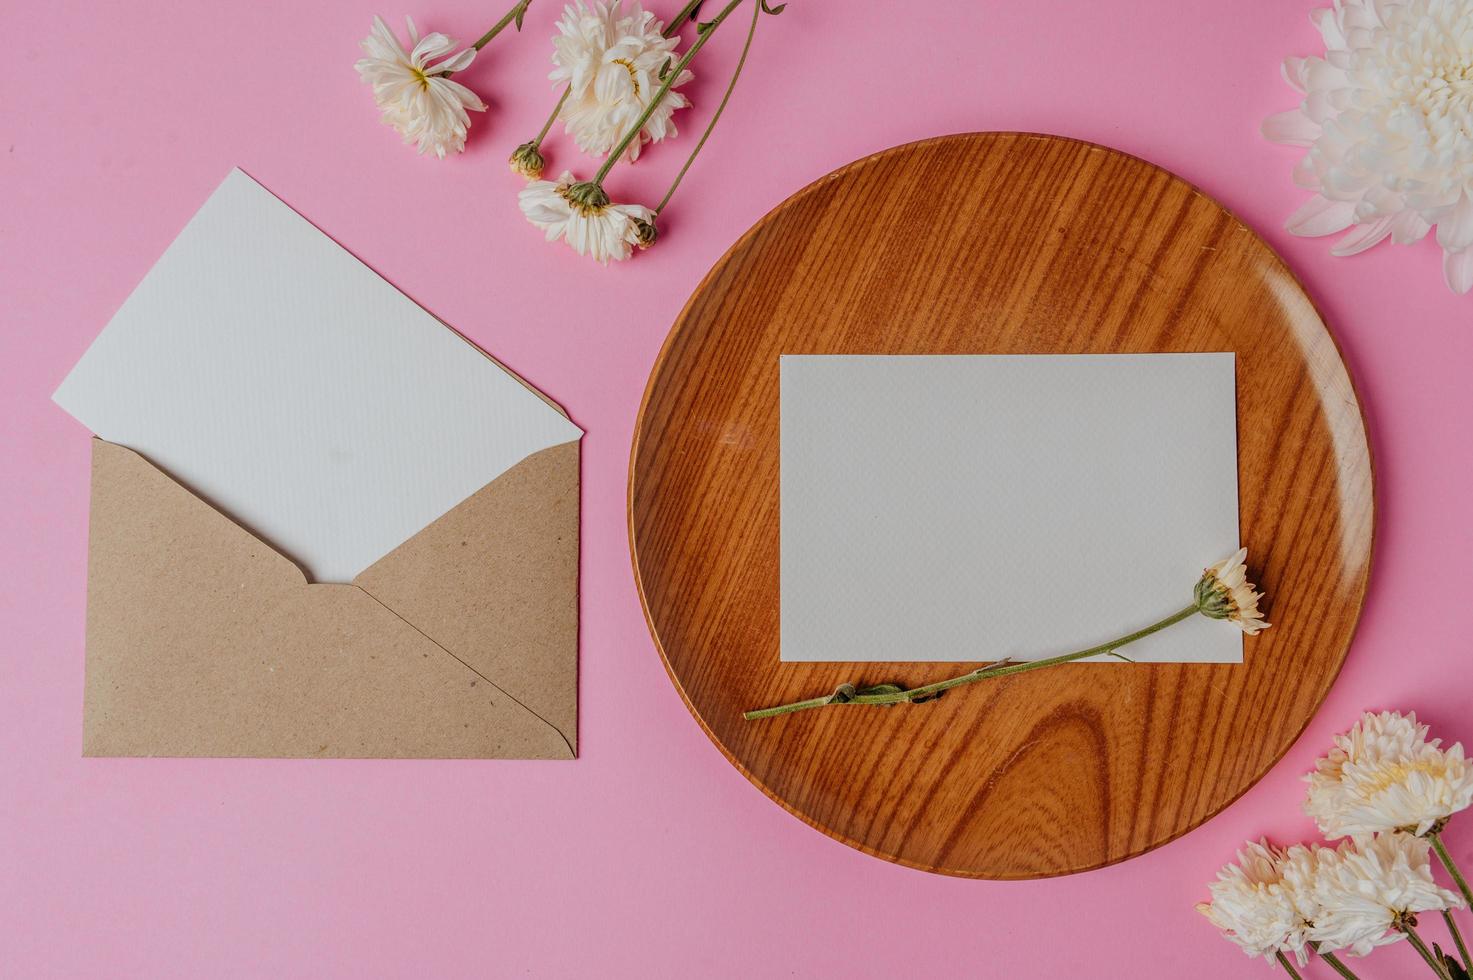 Sobre marrón, flor y tarjeta en blanco sobre placa de madera foto